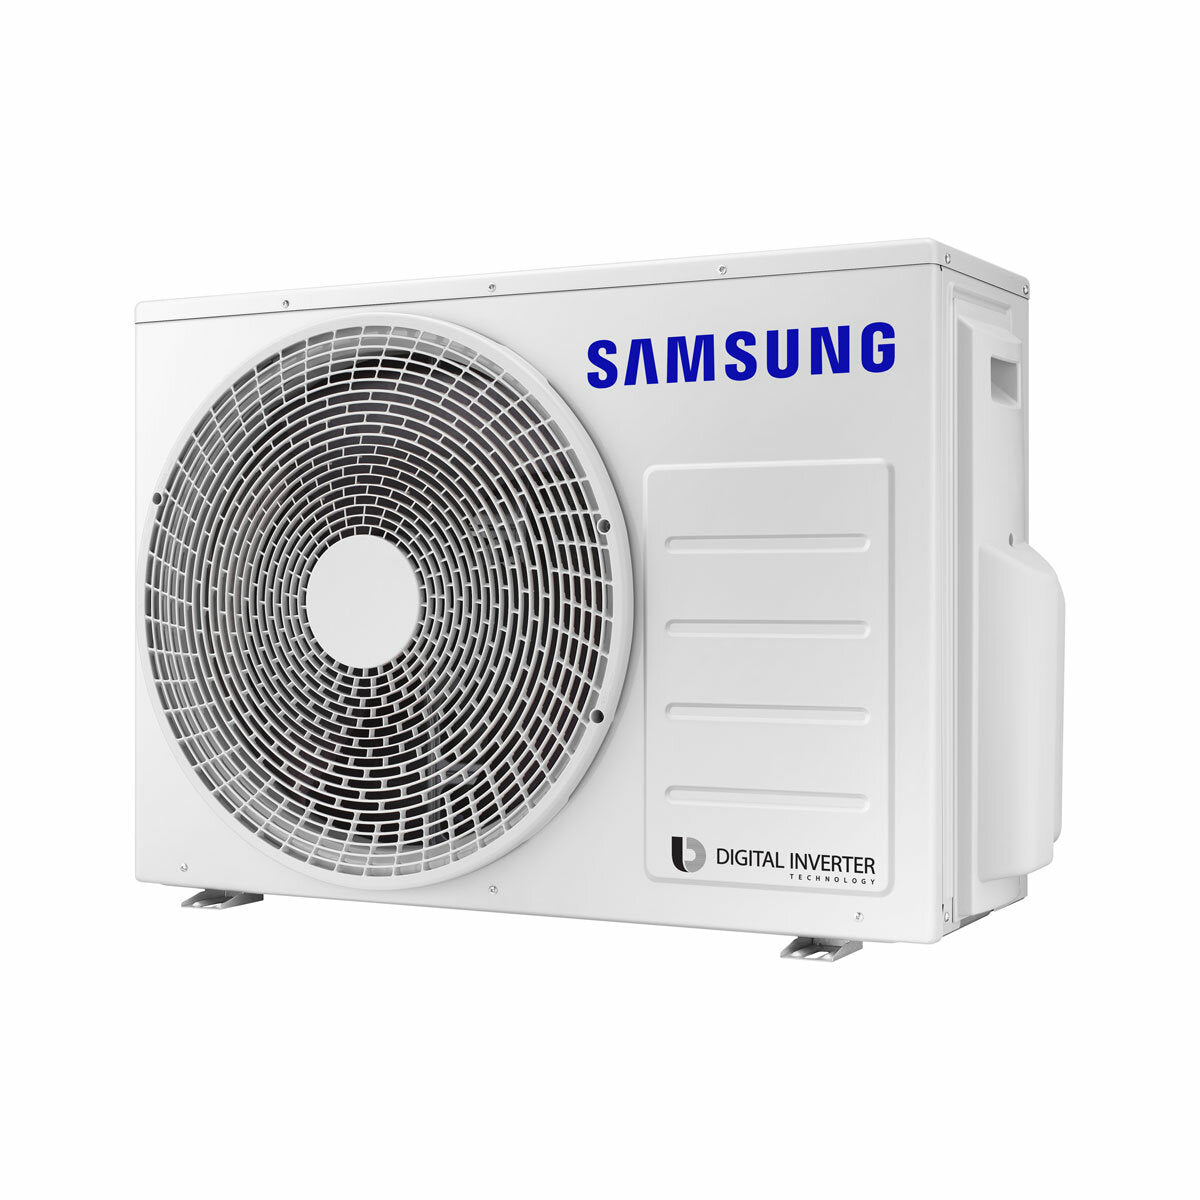 Samsung Cebu Wi-Fi Trial Split Klimaanlage 7000 + 9000 + 12000 BTU Wechselrichter A++ WLAN Außengerät 5,2 kW